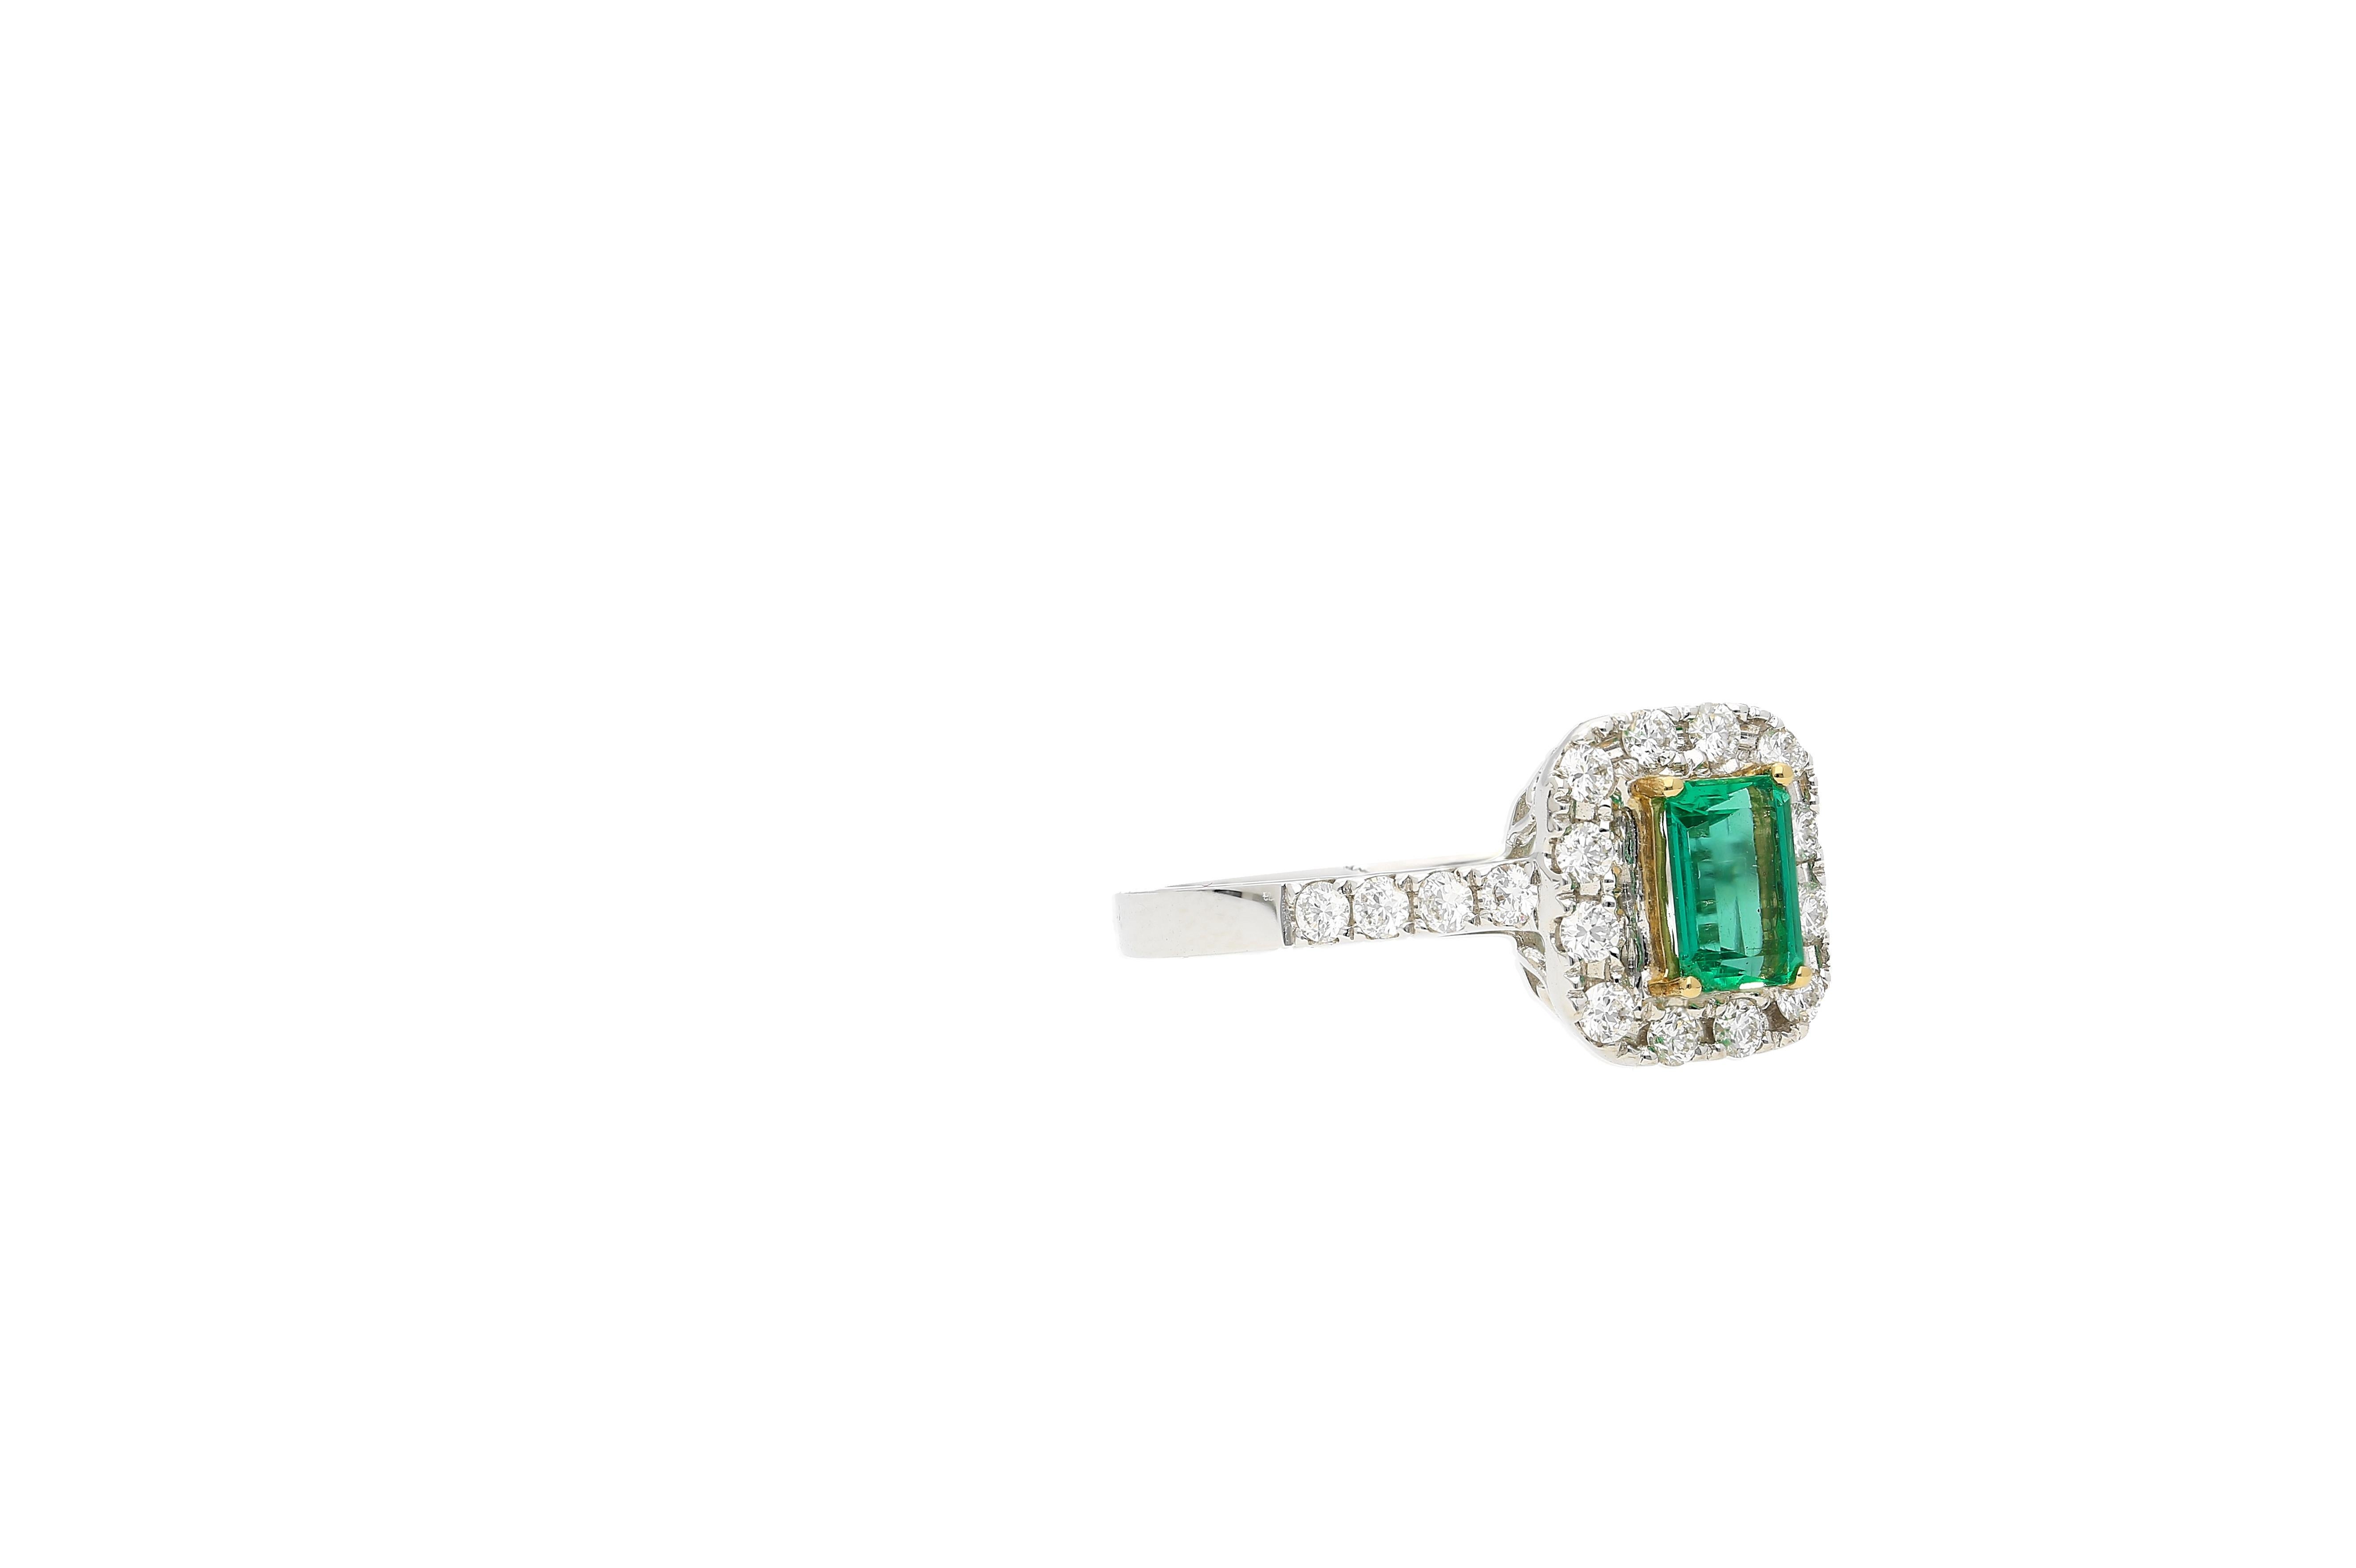 Natürlicher kolumbianischer Smaragd von 0,44 Karat. Der Mittelstein Smaragd ist umgeben von 20 augenreinen farblosen Diamanten von insgesamt 0,35 Karat. Die  Der Smaragd wird durch die 4-Zacken-Fassung aus Gelbgold gut kontrastiert. 

Dieser Ring